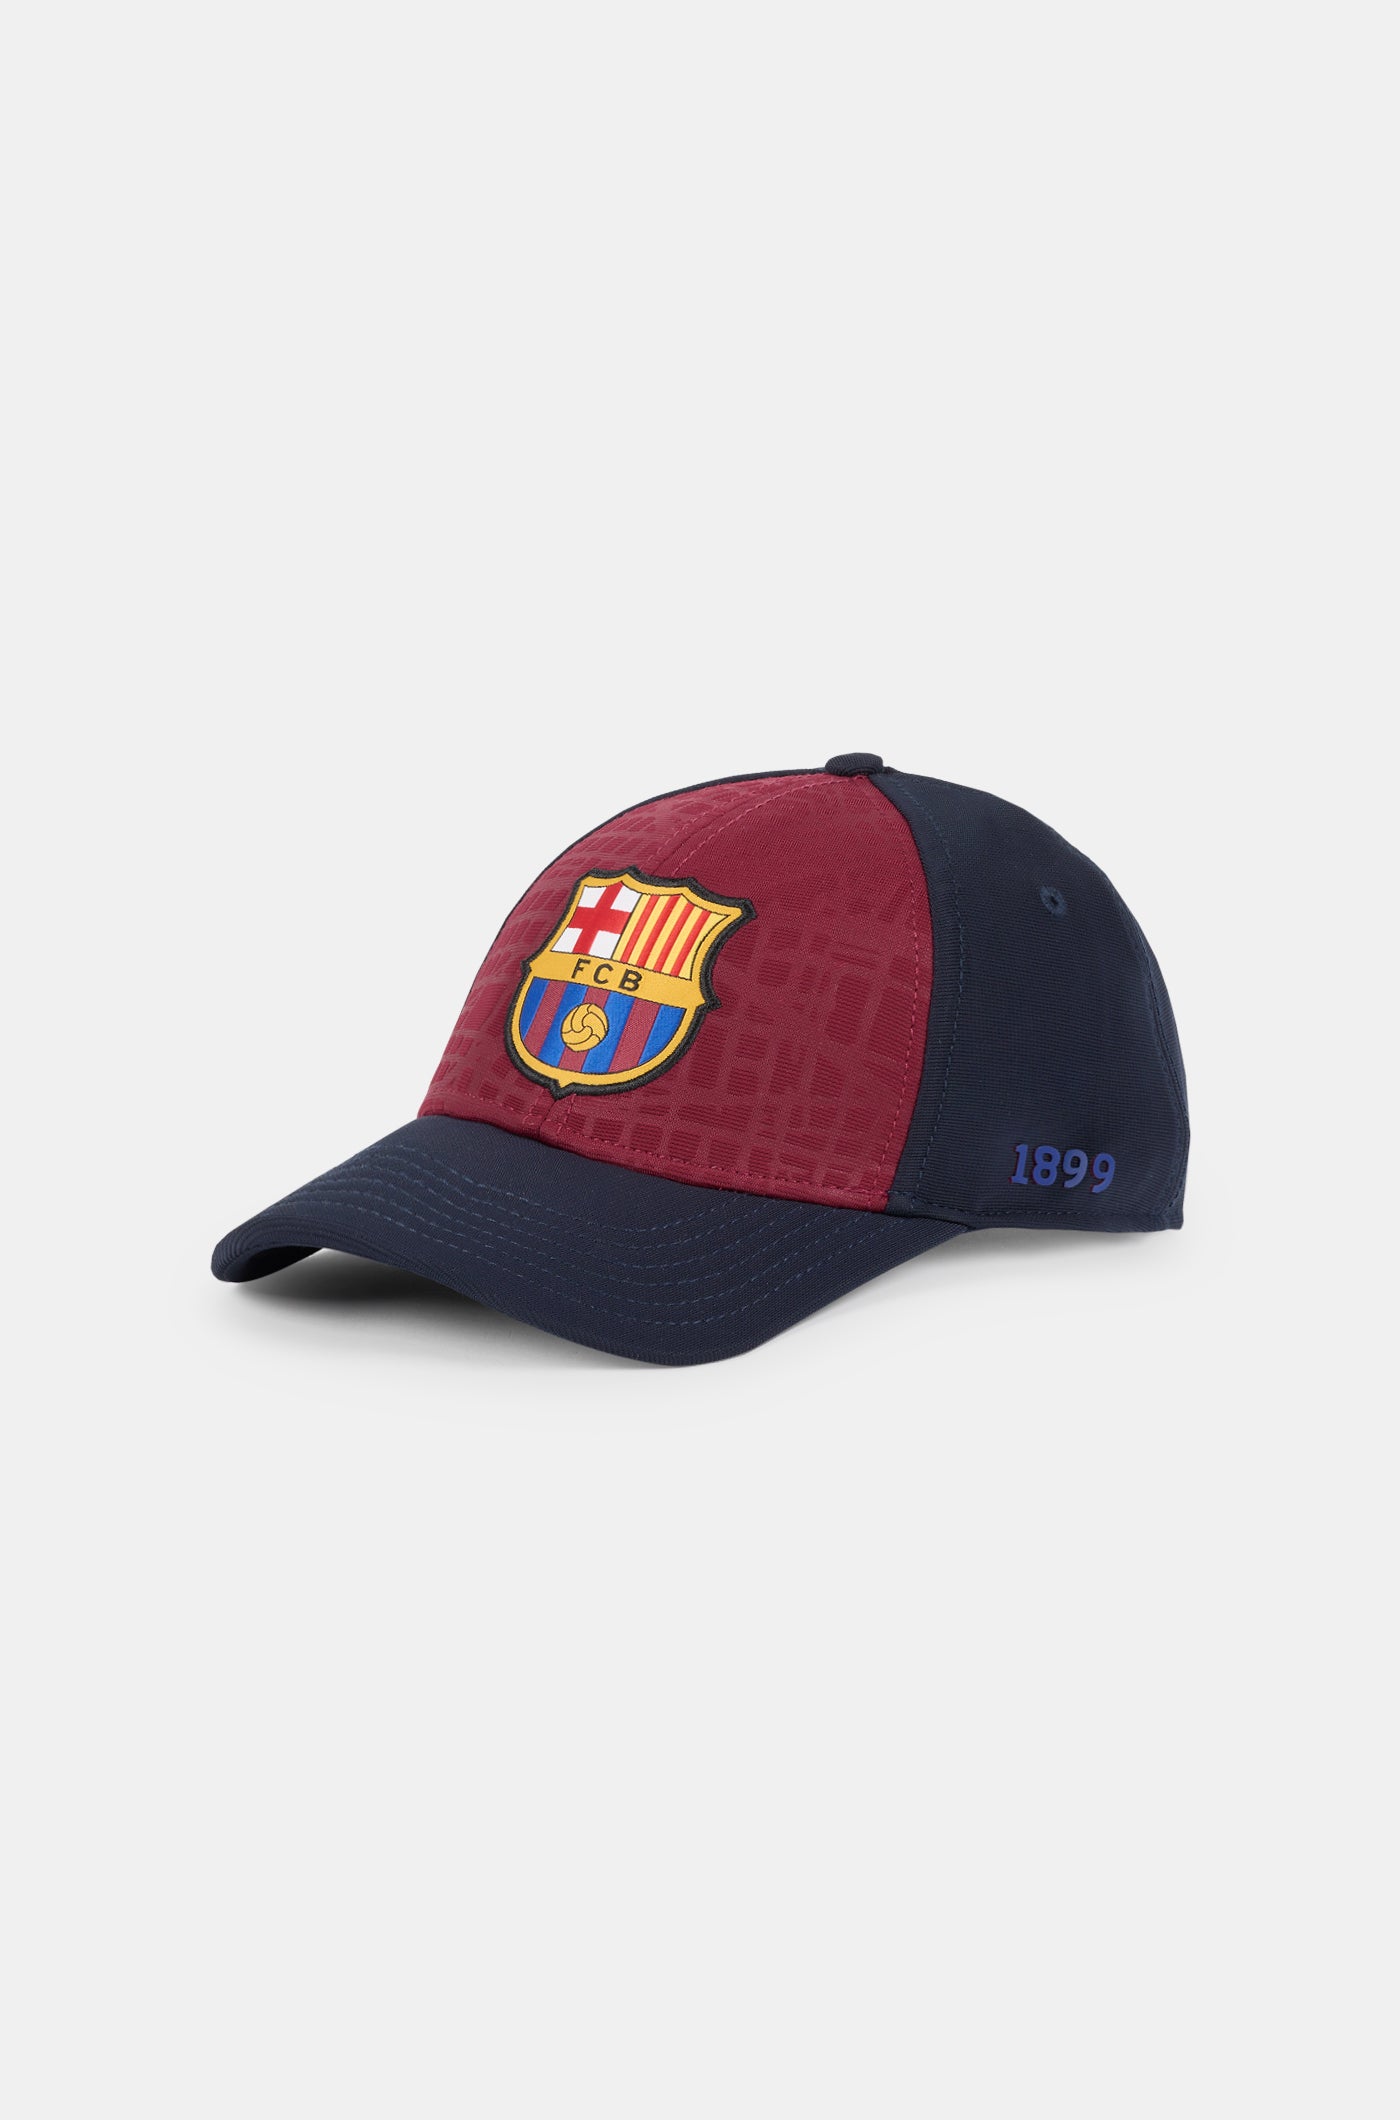 Gorra FC Barcelona amb escut 1899